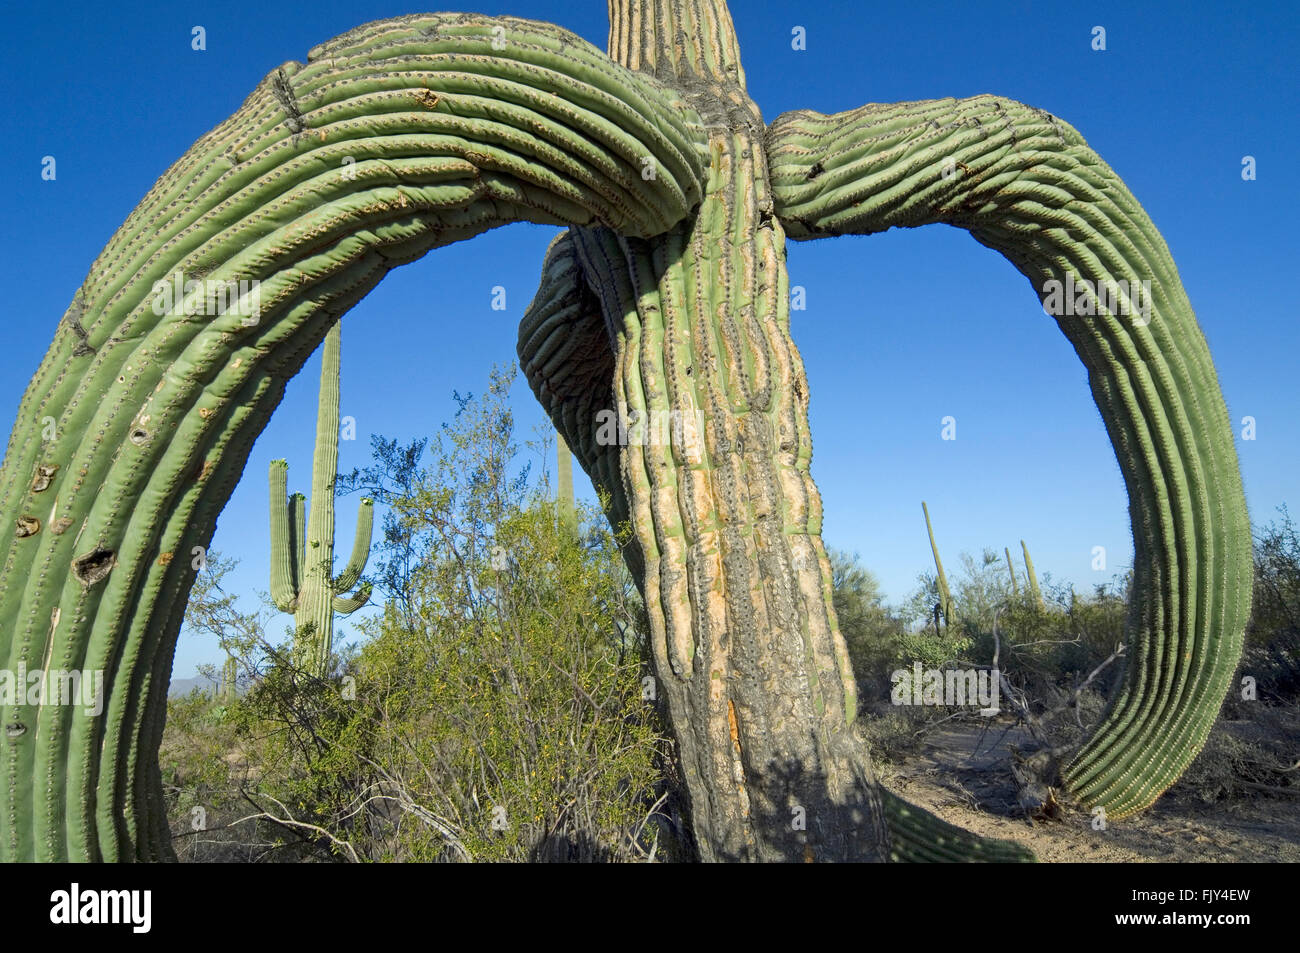 Saguaro cactus (Carnegiea gigantea / Cereus giganteus) with sagging branches caused by frost or snow, Sonoran desert, Arizona Stock Photo